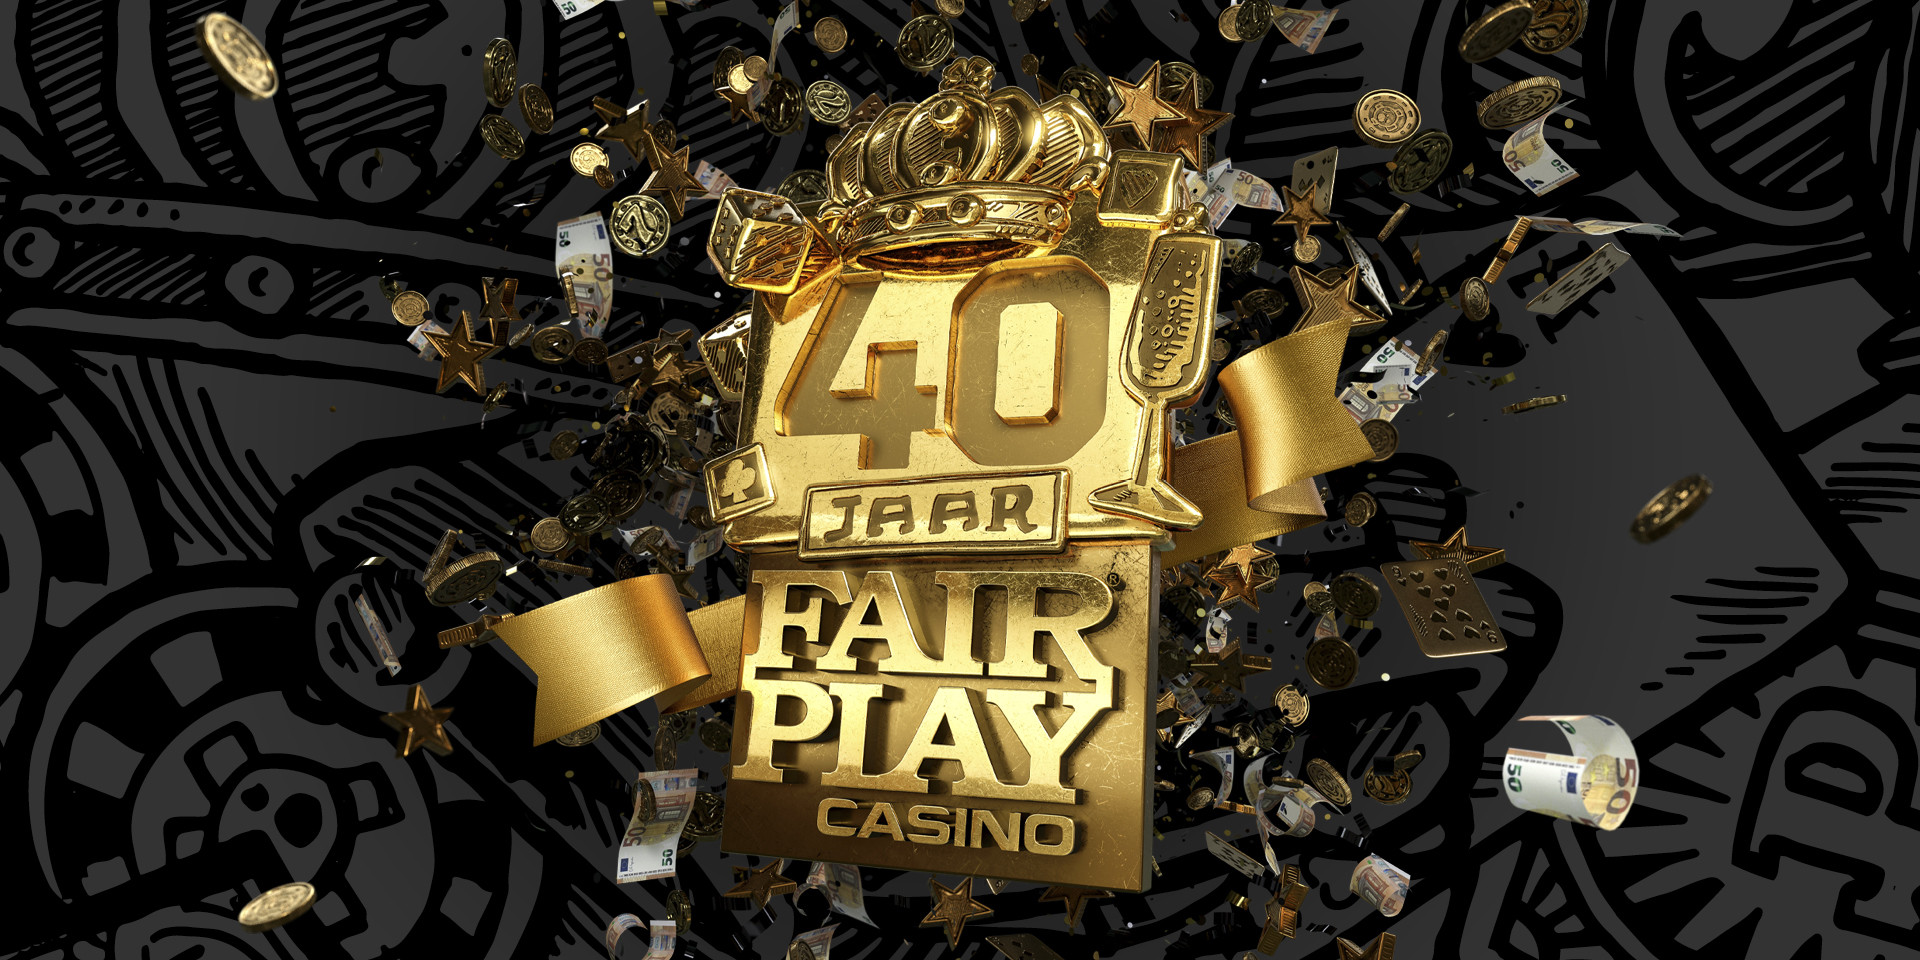 Fair Play Casino is jarig!